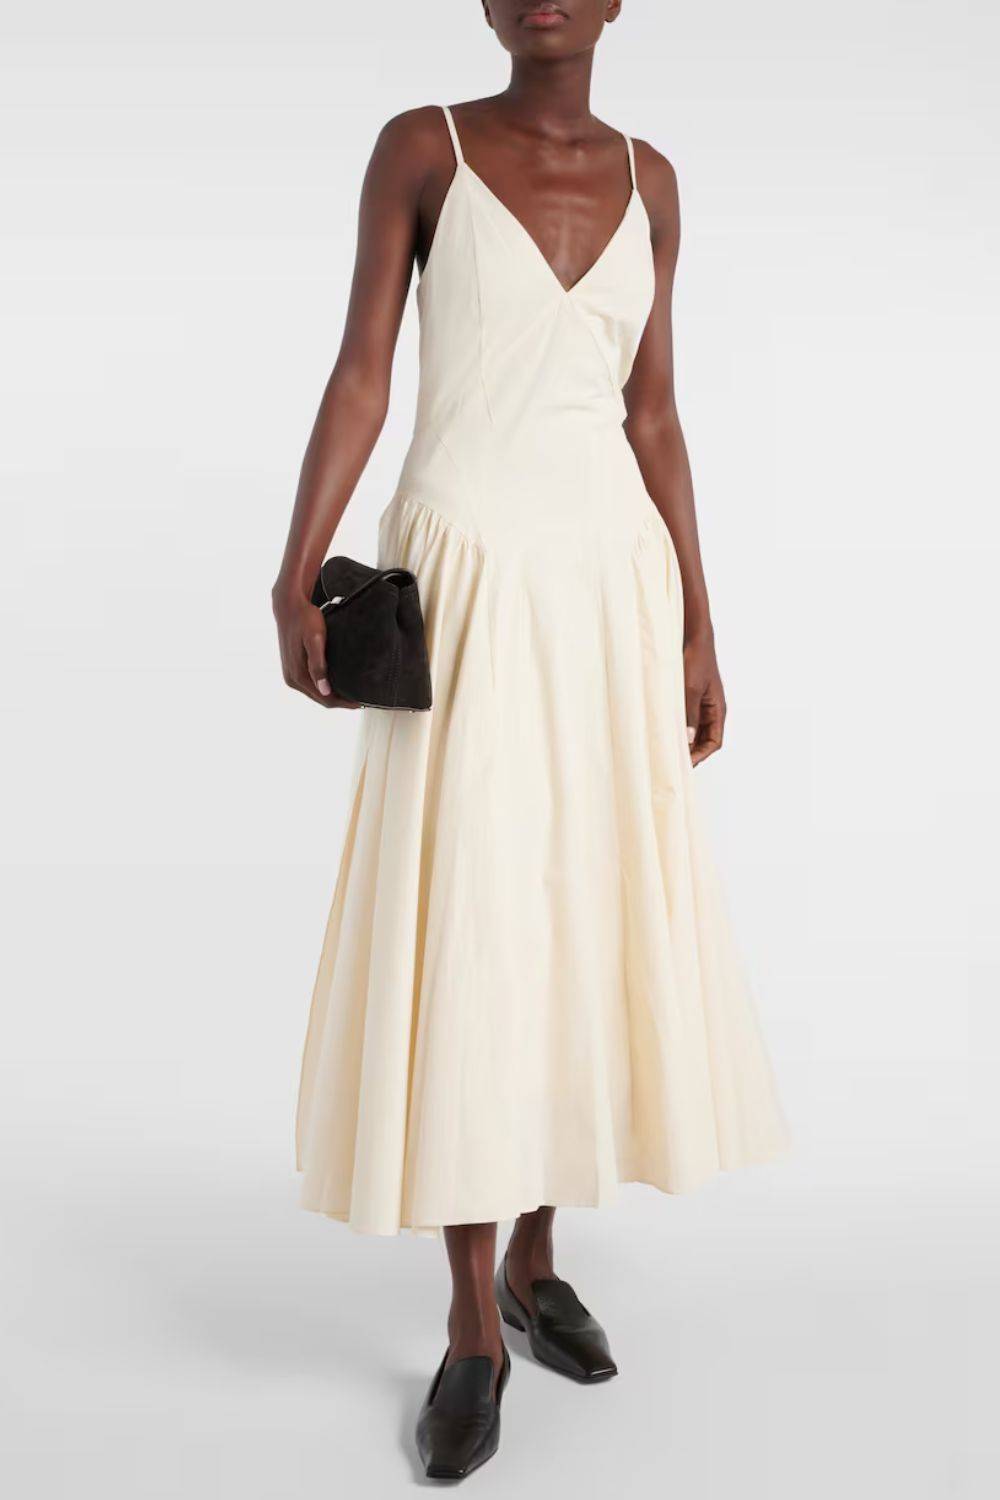 Sukienka biała letnia z dekoltem V, Tove, ok. 3250 zł (Fot. materiały prasowe)